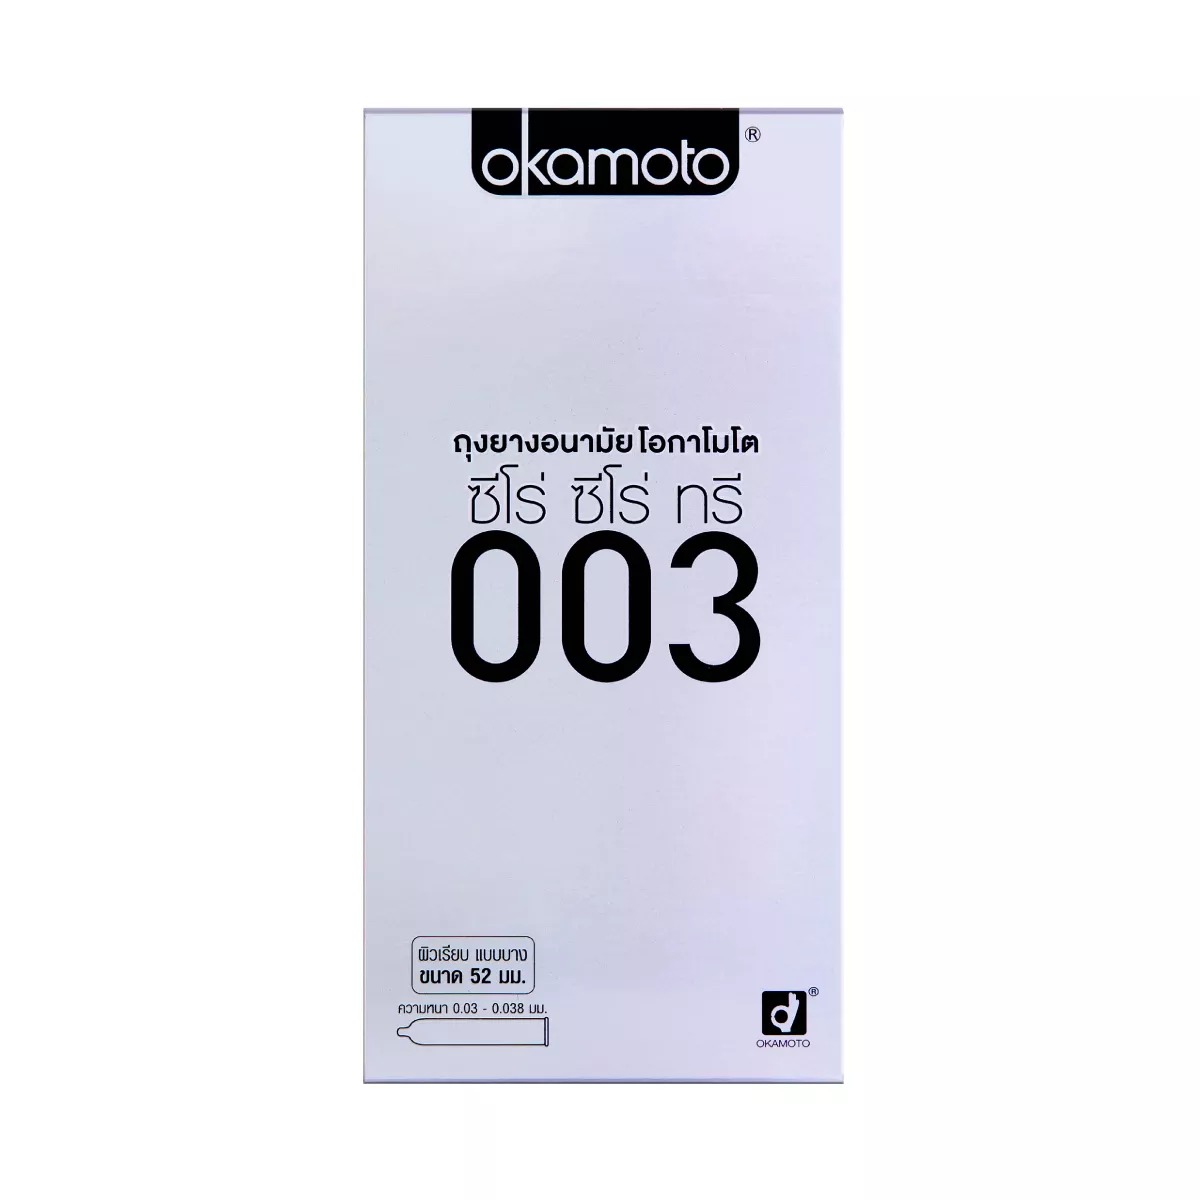 ถุงยางอนามัย โอกาโมโต้ ซีโร่ ซีโร่ ทรี 0.03 (ลิขสิทธิ์ไทย) / Okamoto 003 แพ็ค 10 ชิ้น (บางและคุ้ม) ไซส์ 52